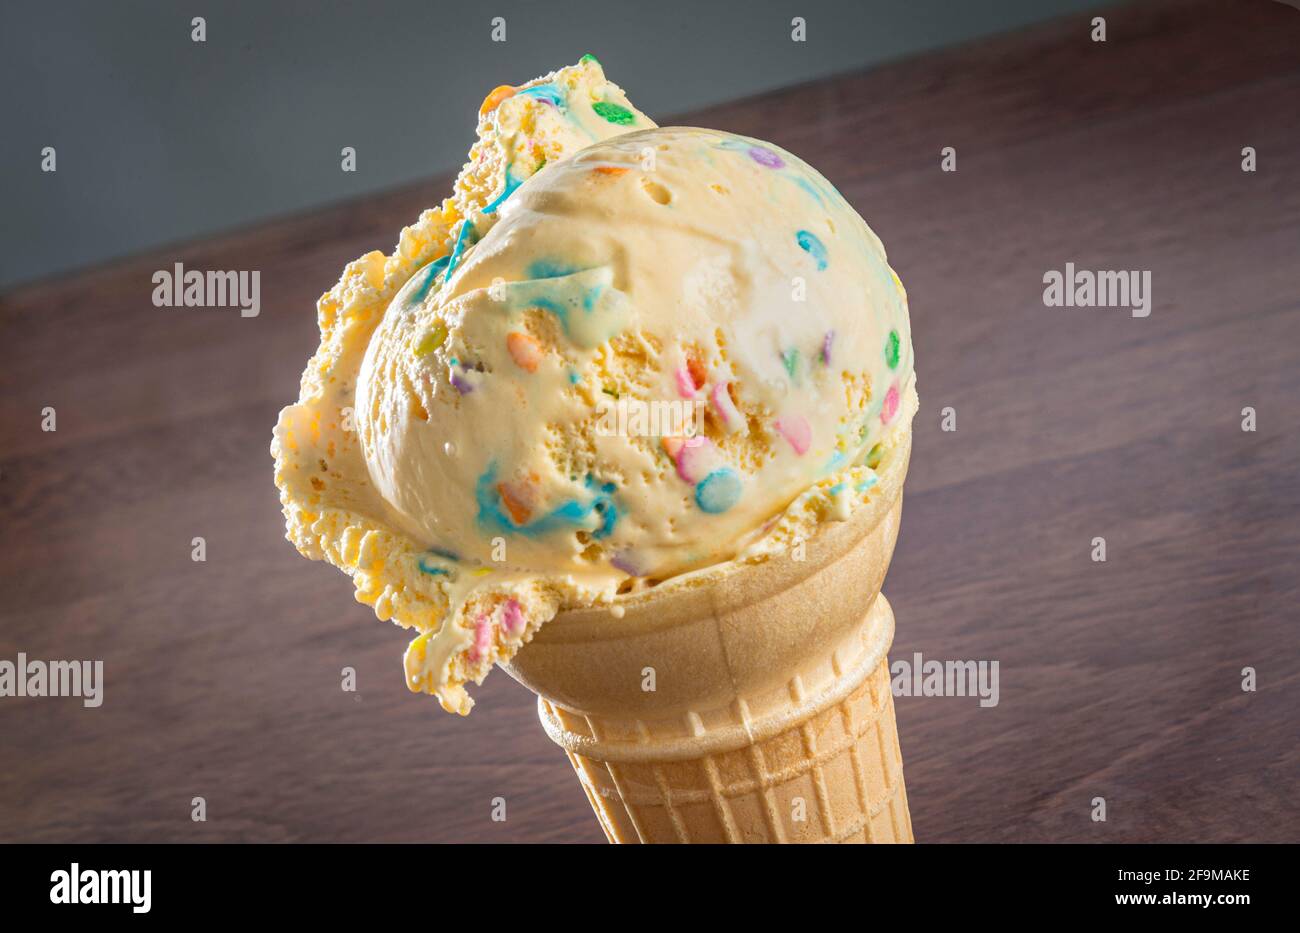 One scoop of ice cream cone detail Stock Photo